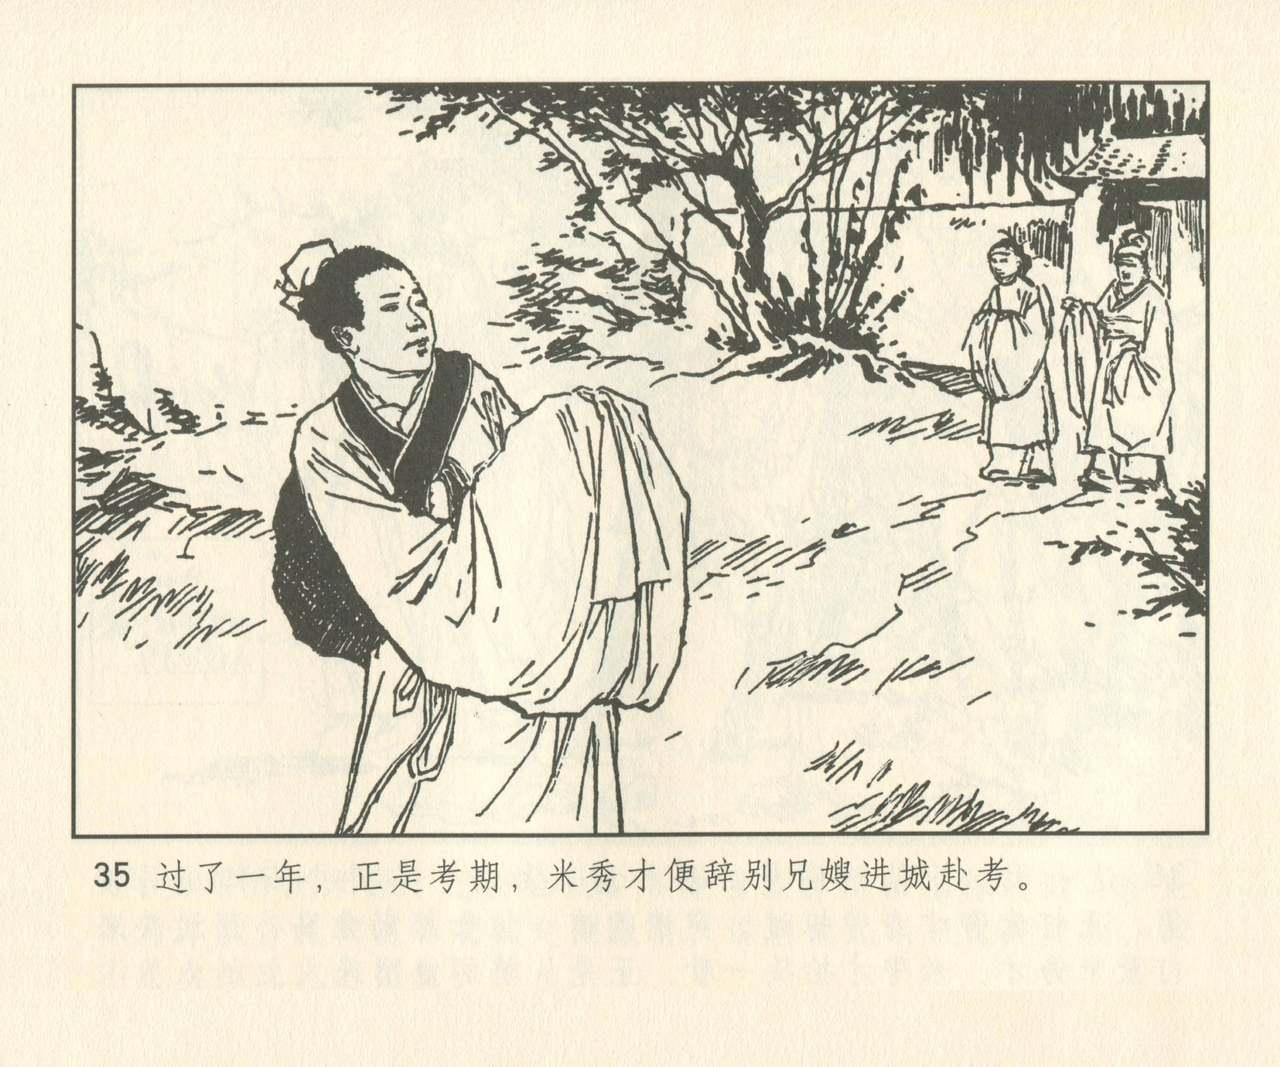 聊斋志异 张玮等绘 天津人民美术出版社 卷二十一 ~ 三十 163